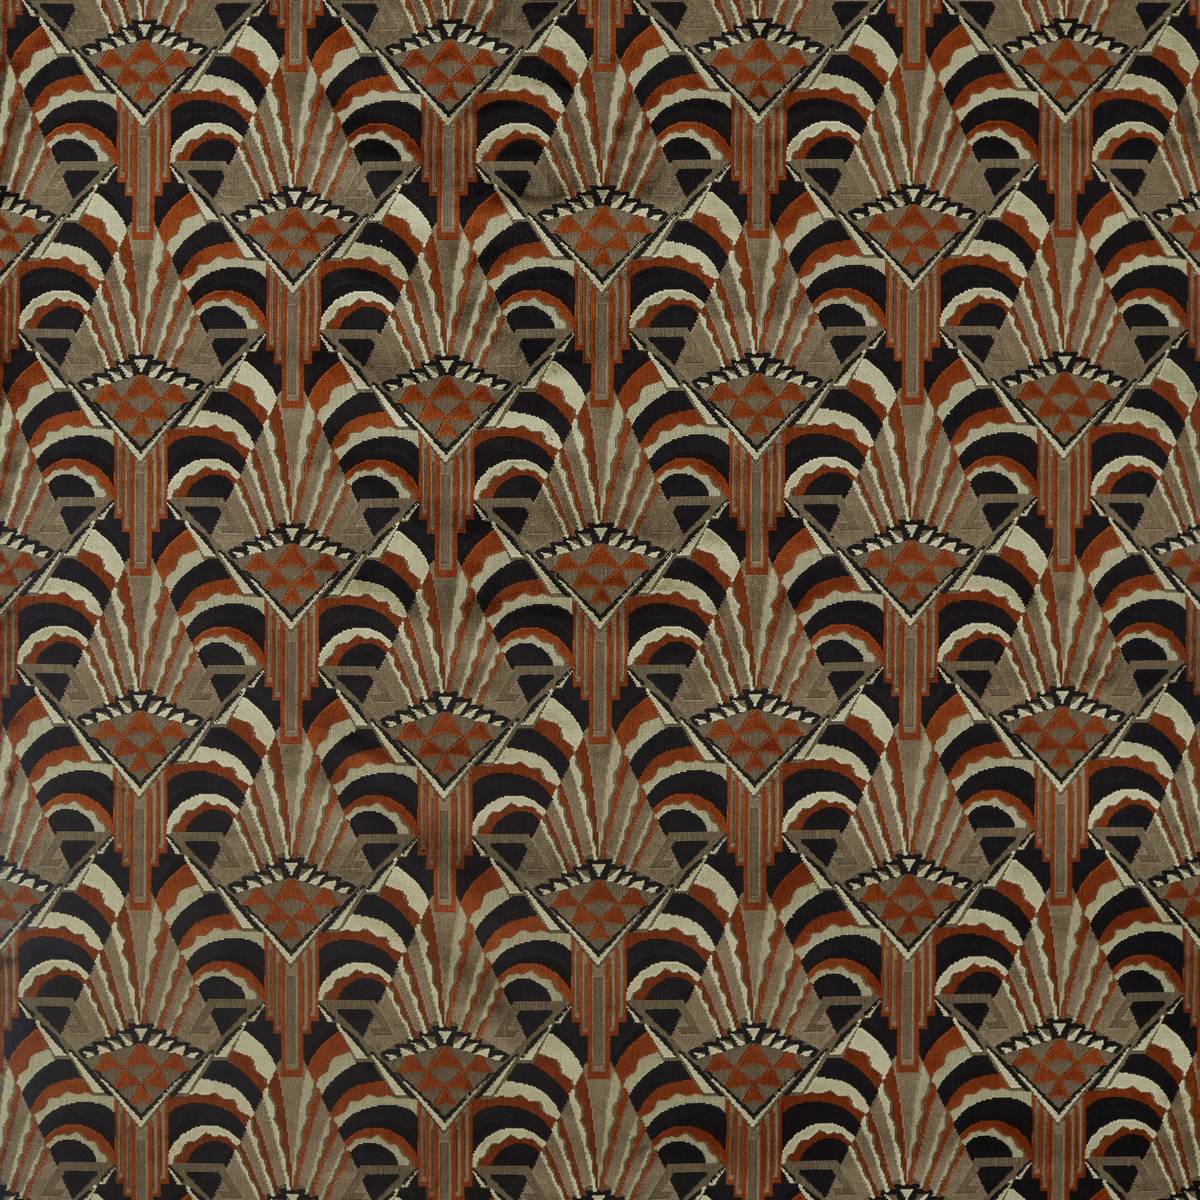 Conway Sahara Fabric by Zoffany